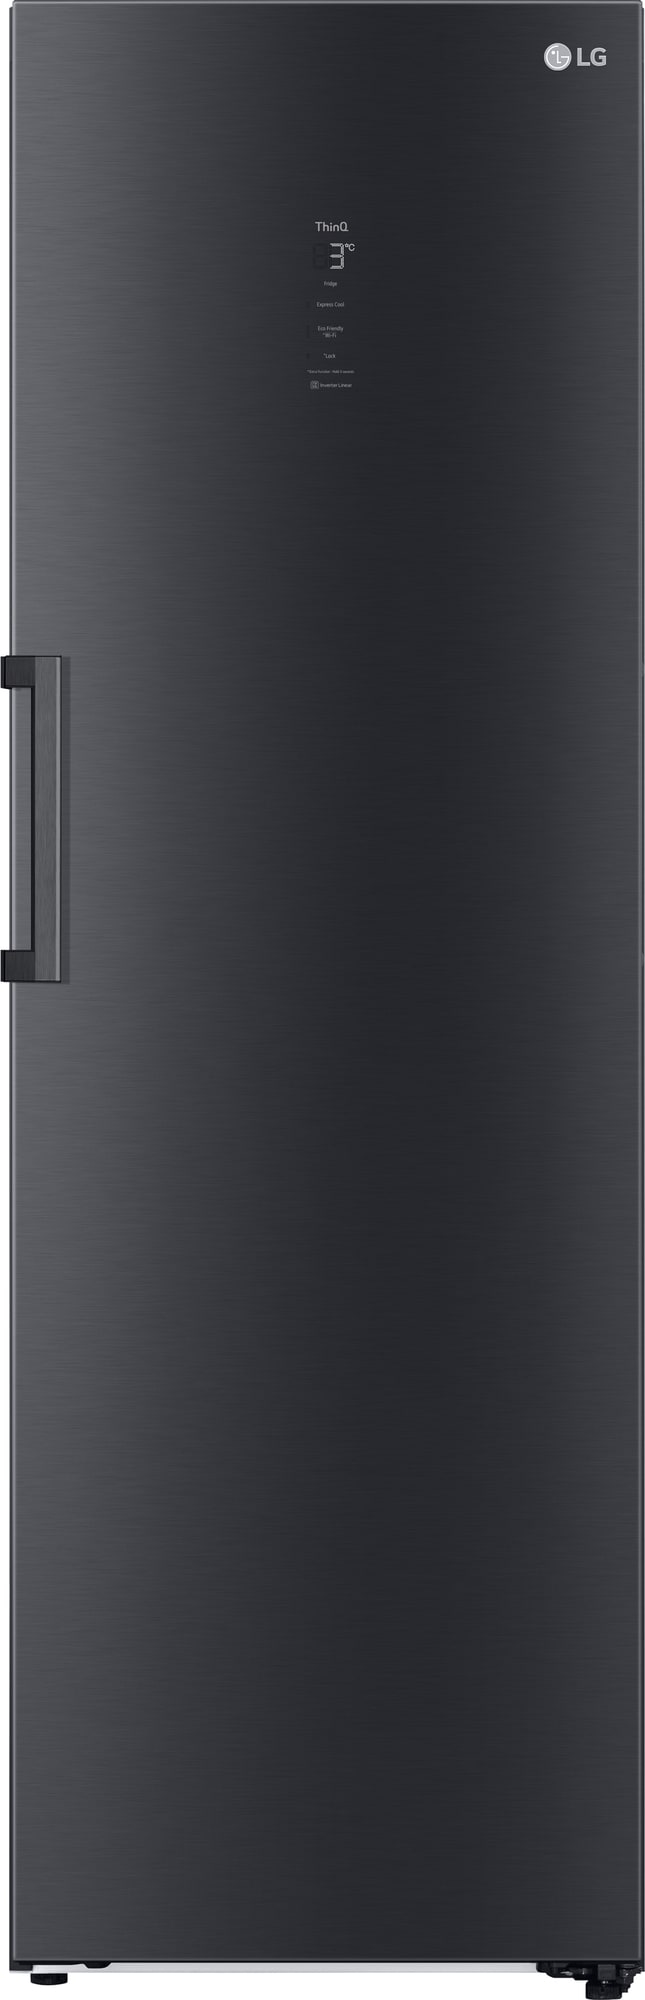 Se LG køleskab GLM71MCCSX hos Elgiganten